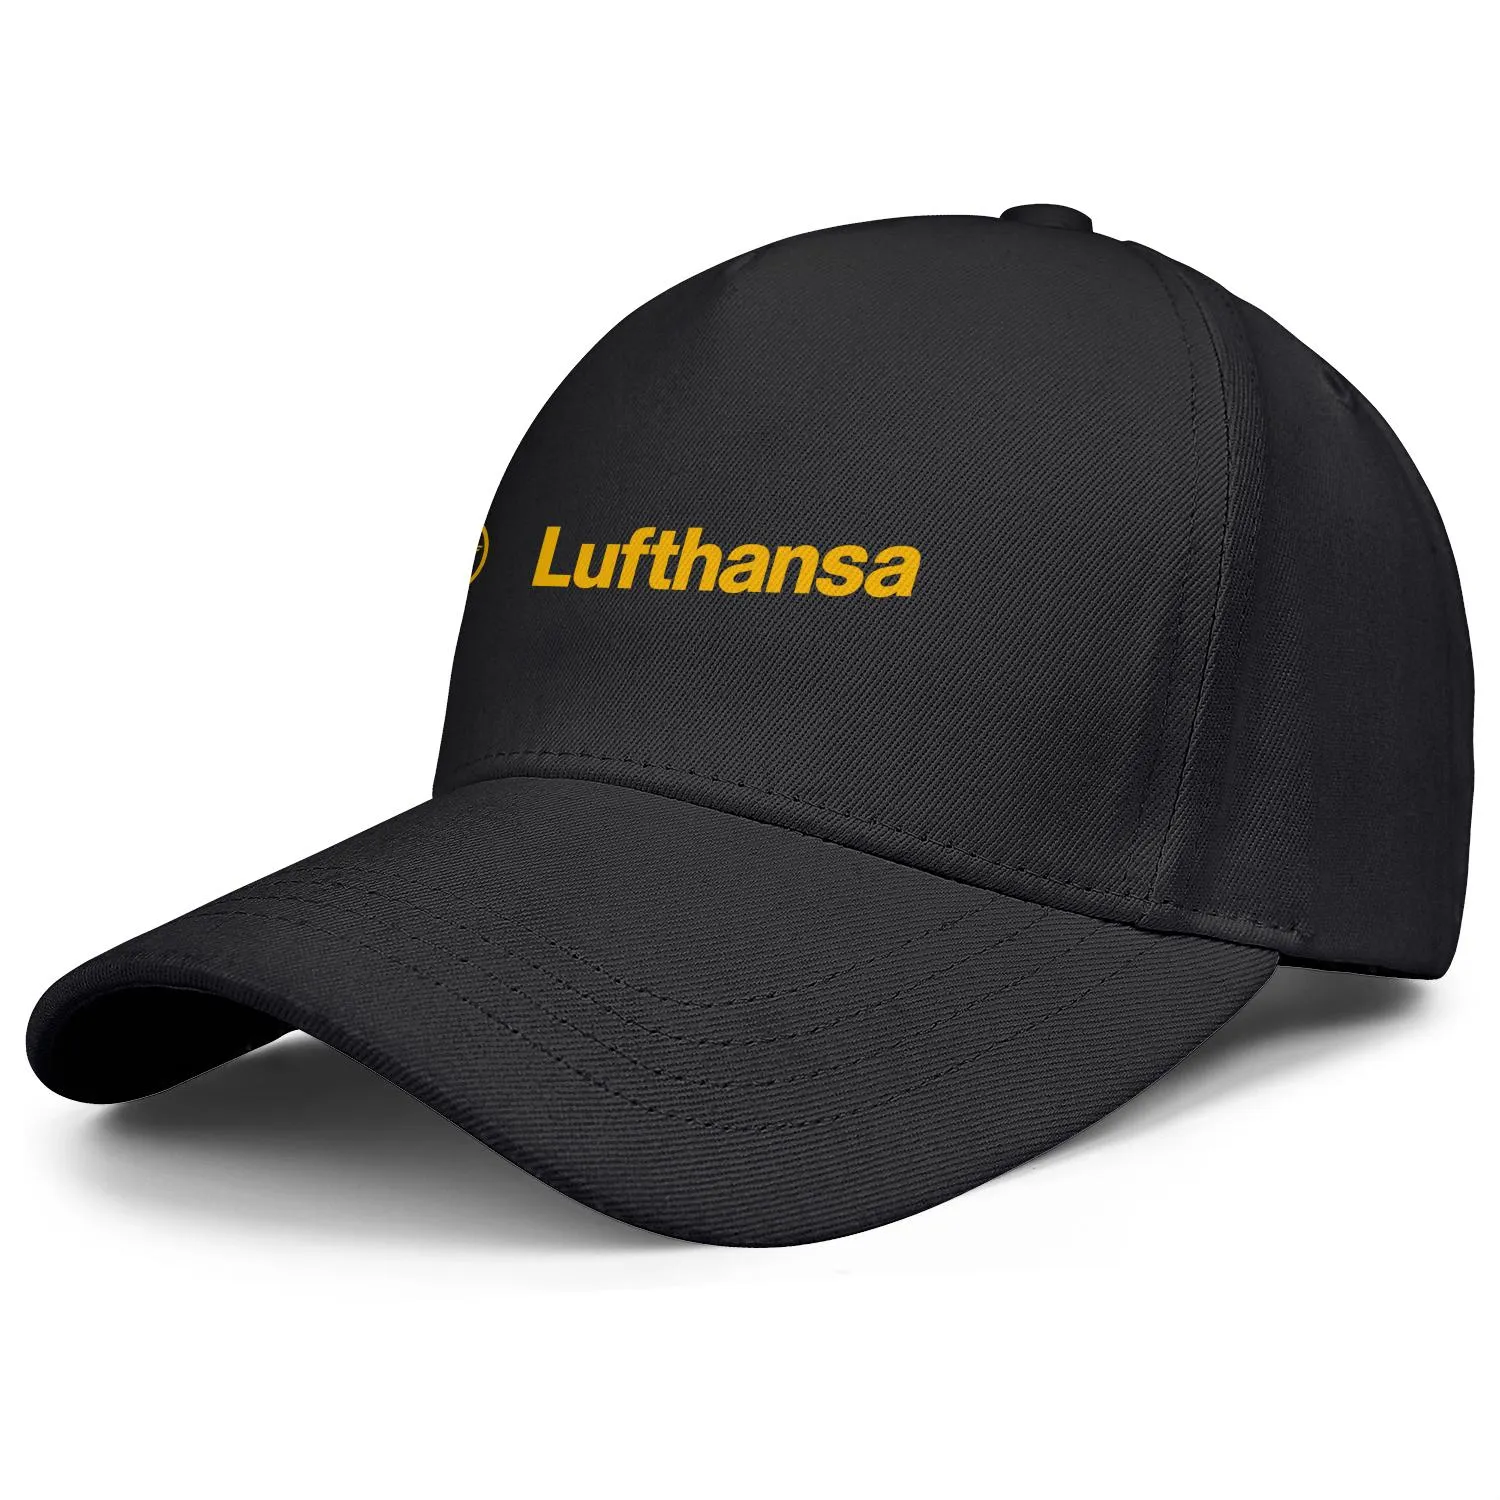 Lufthansa Airline símbolo logotipo masculino e feminino ajustável boné de caminhoneiro design equipe esportiva elegante bonés de beisebol bandeira alemã logotipo gay 6718509